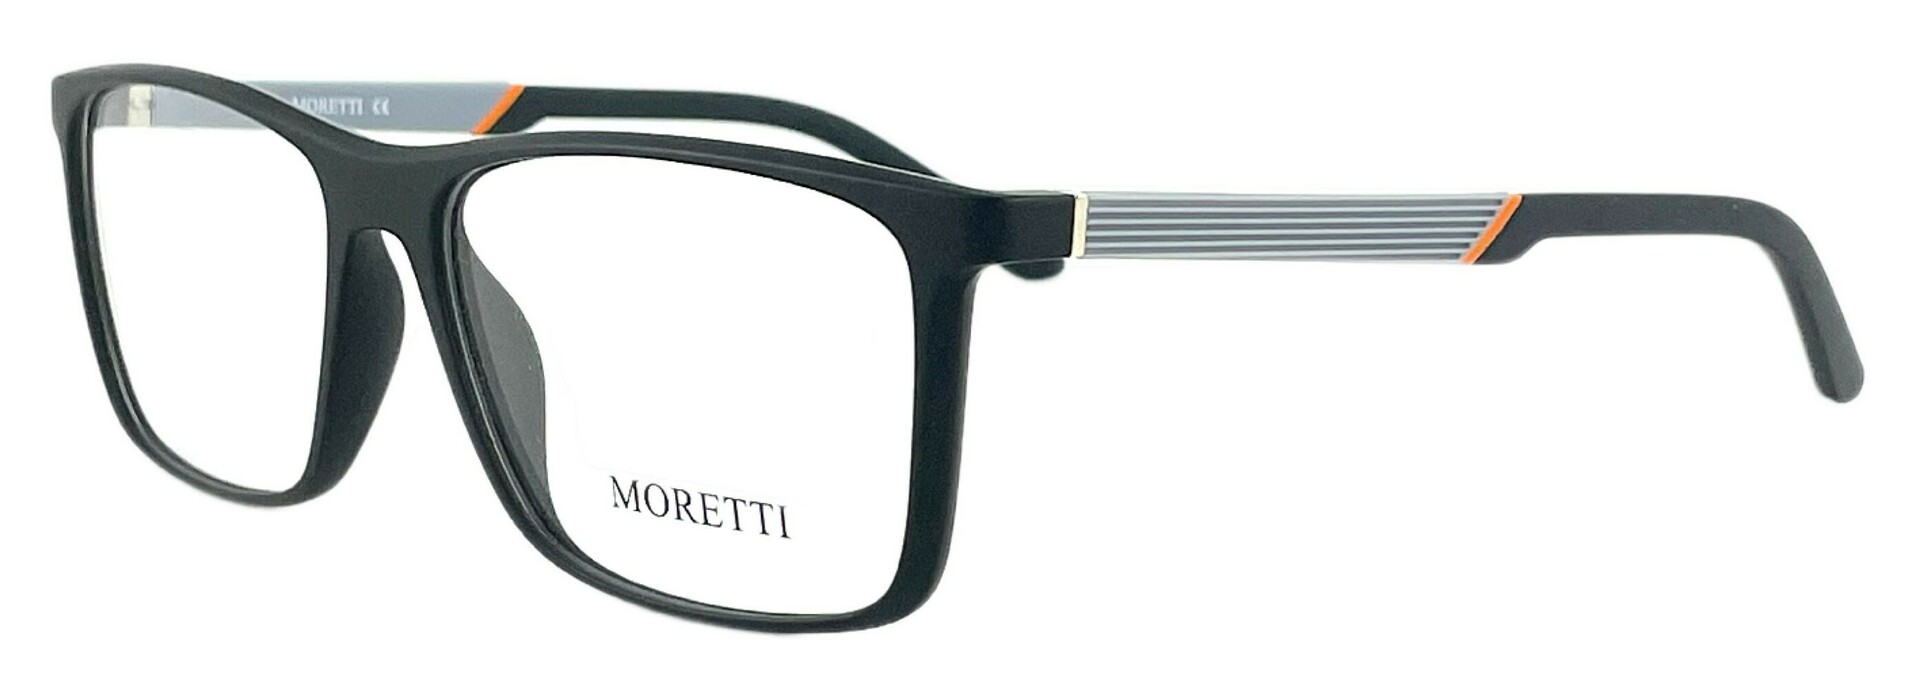 Moretti MZ01-05 C.01F 2